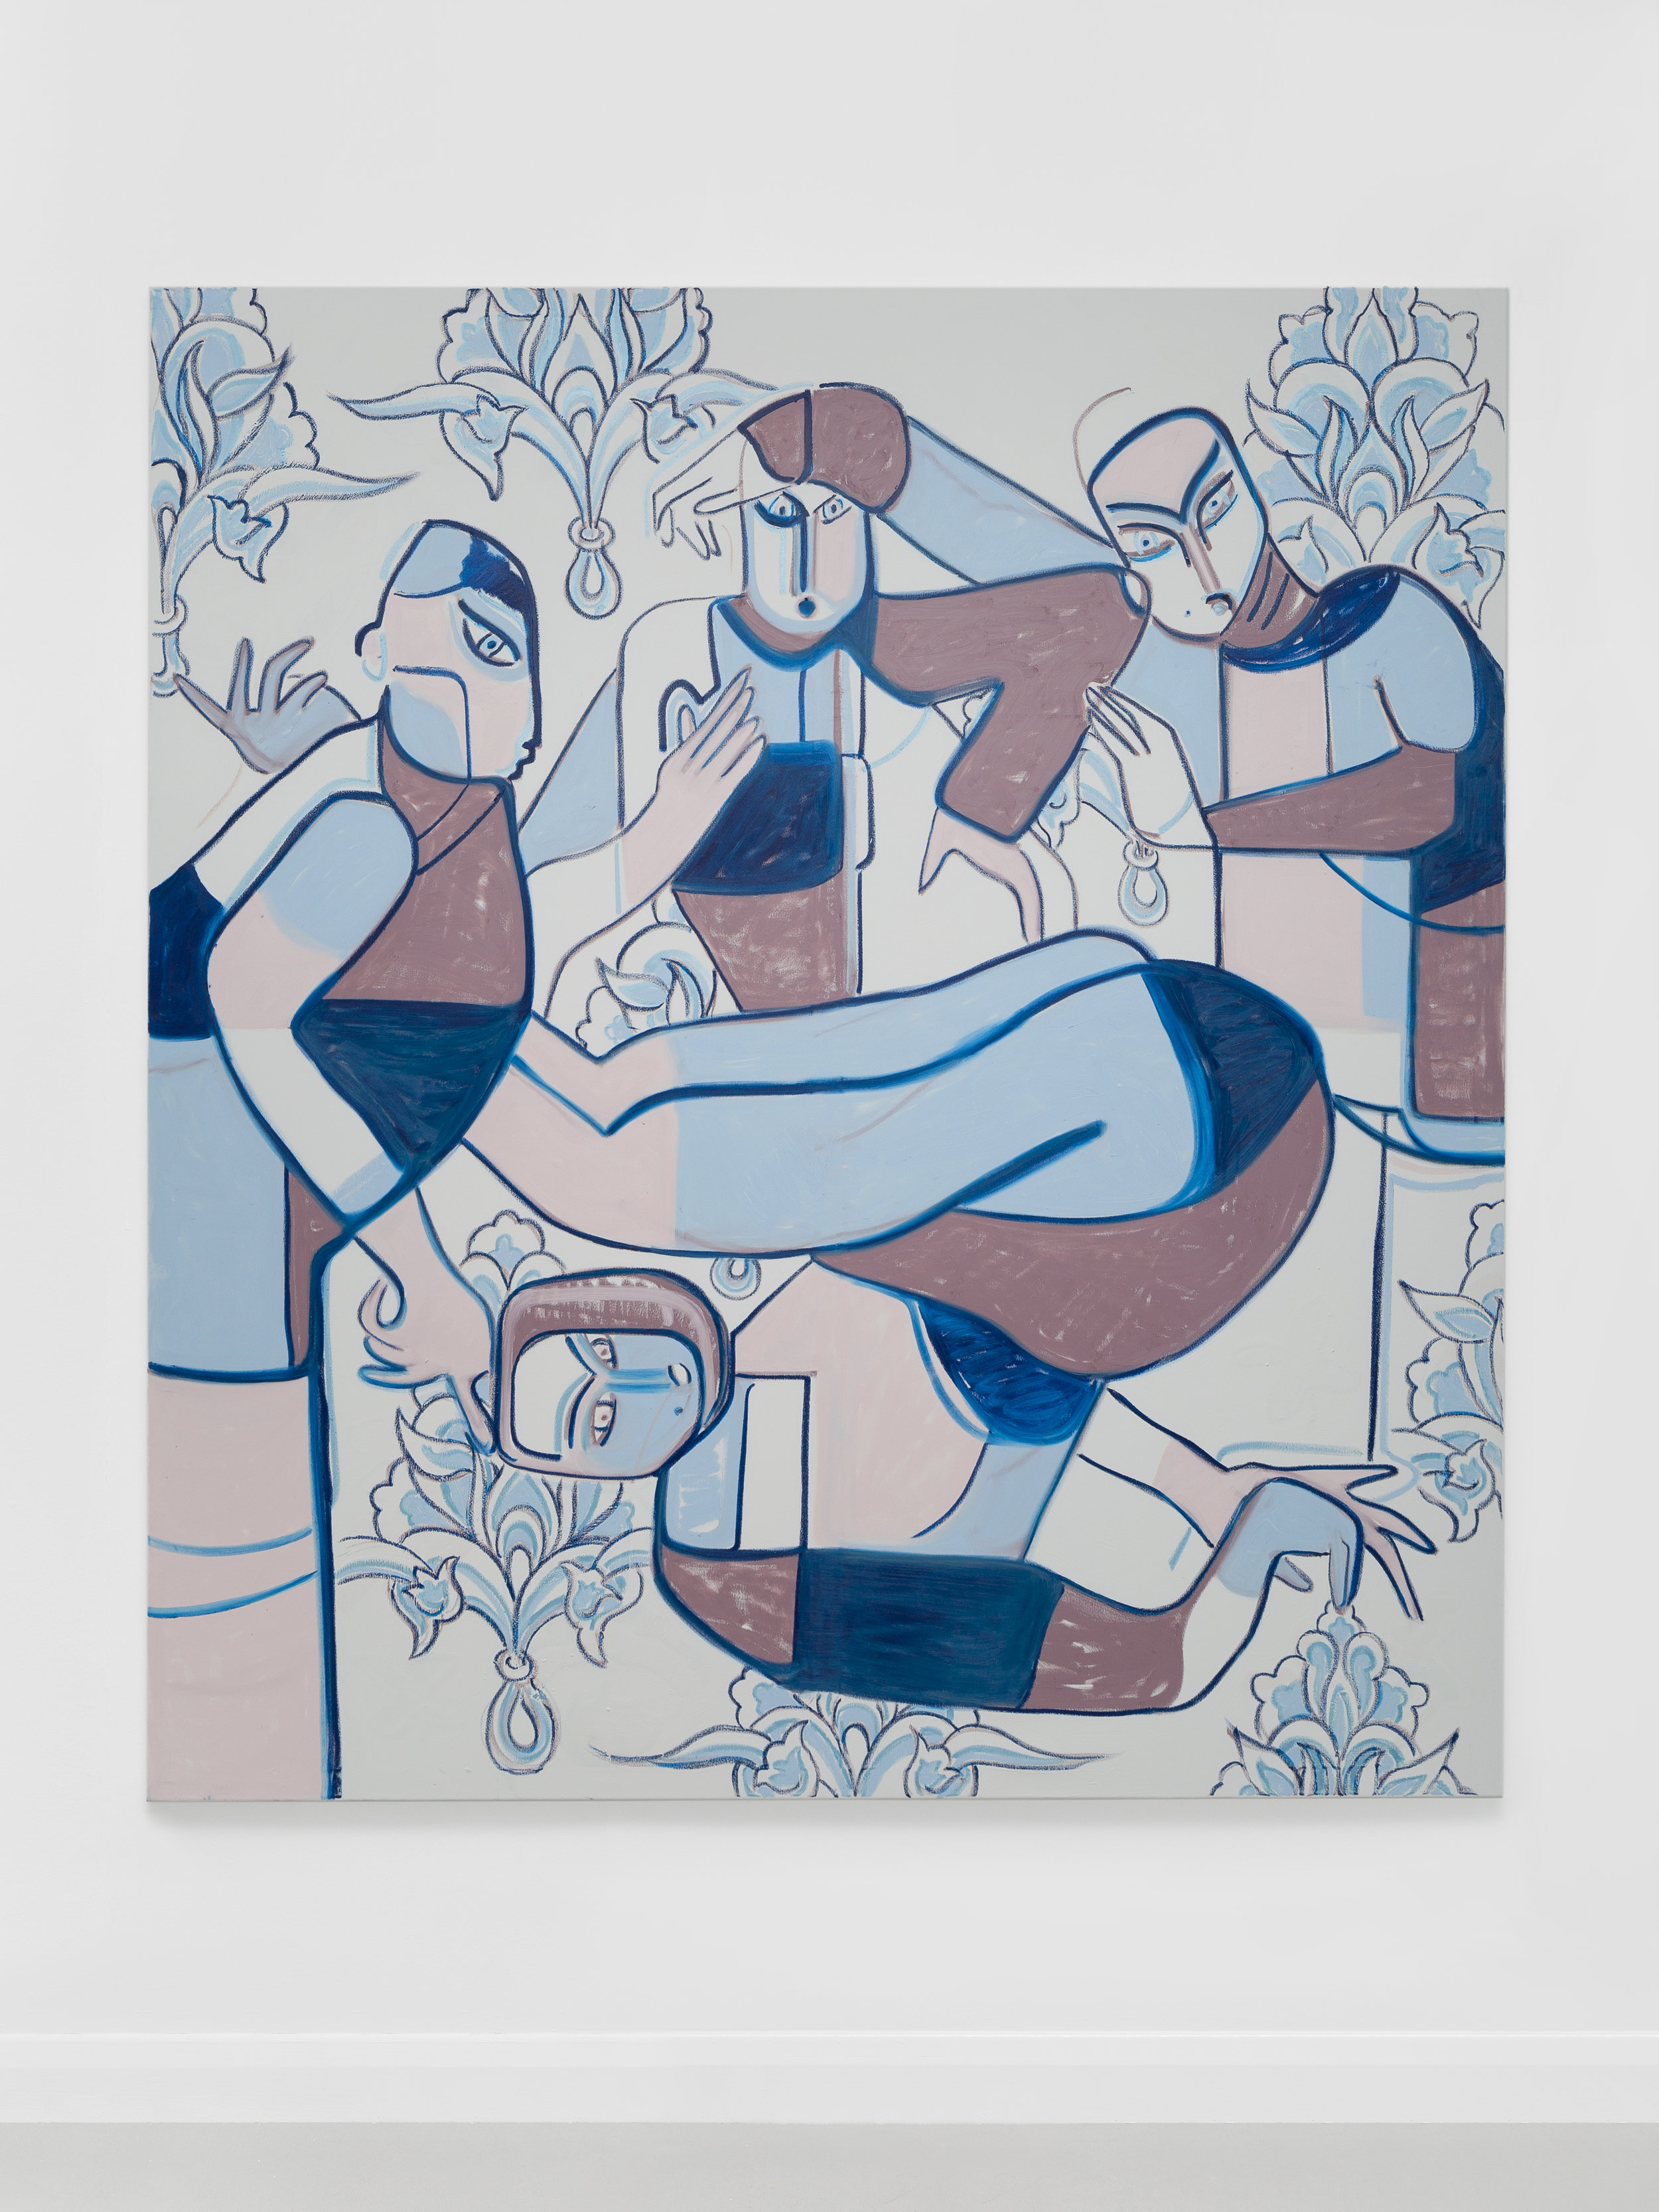 Melike Kara, Like locked rooms, 2019, oil stick and acrylic on canvas, 200 x 180 cm @Ollie Hammick.jpg